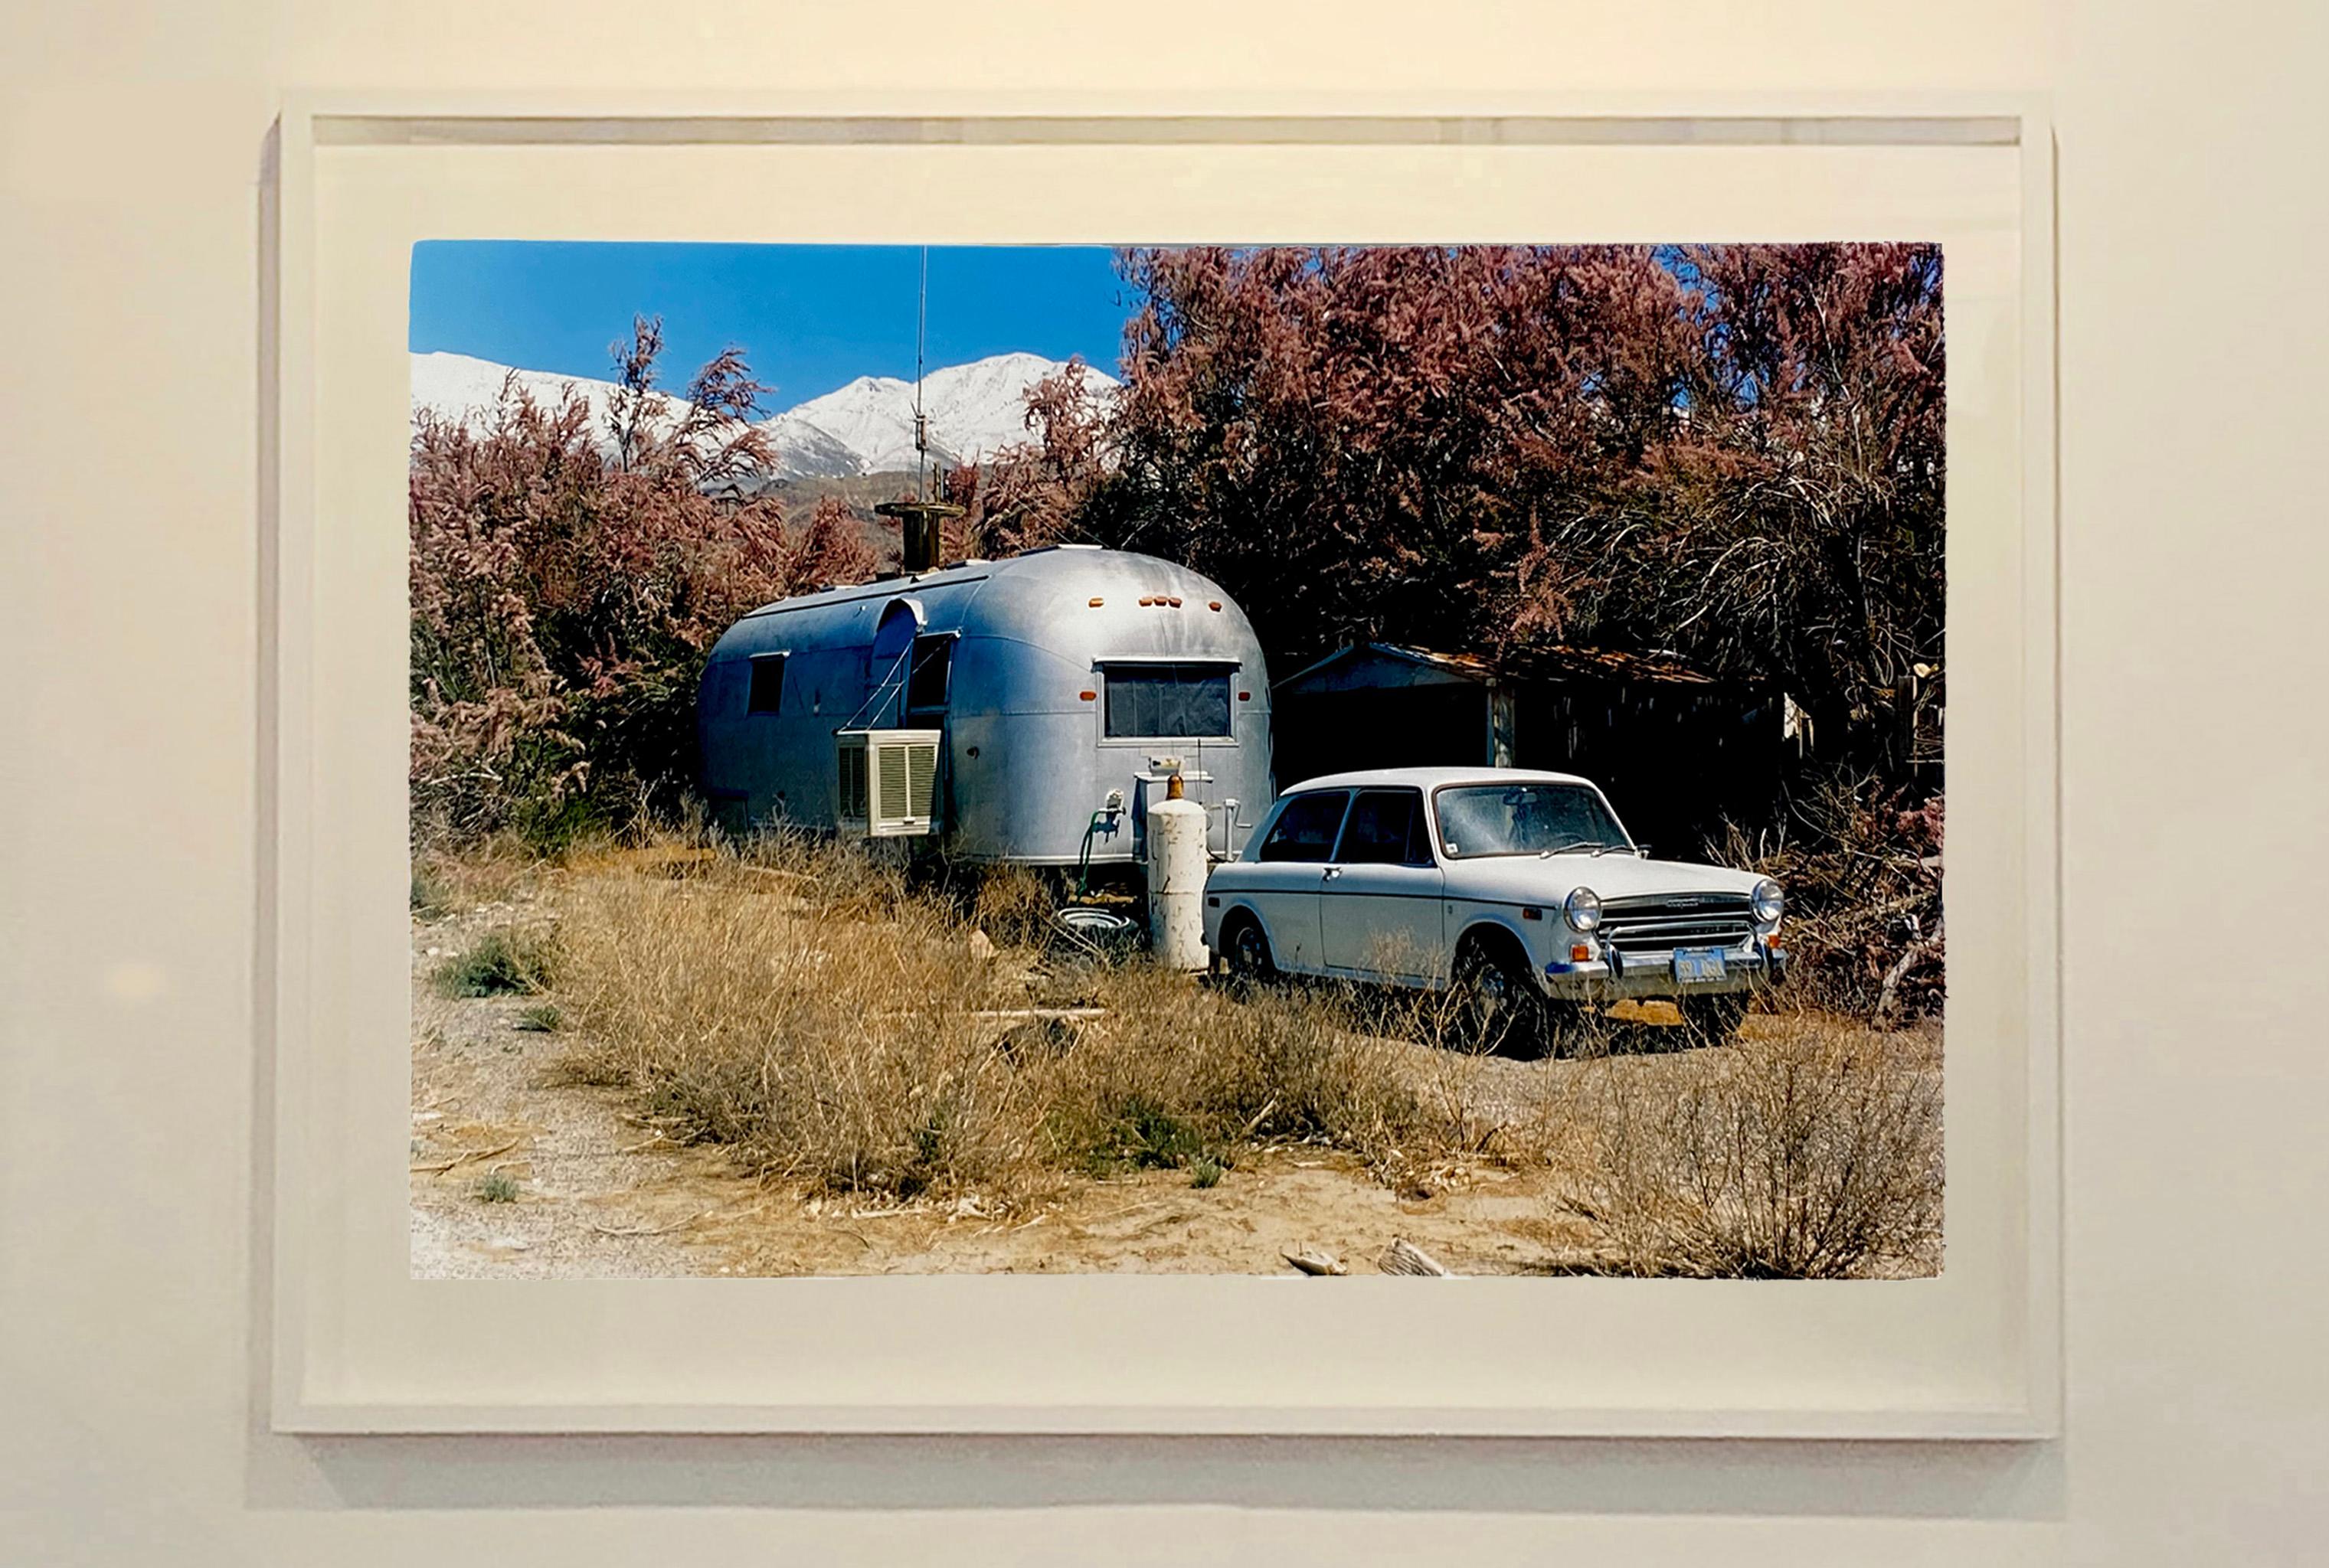 Austin and Airstream, Keeler, Kalifornien – amerikanische Farbfotografie (Schwarz), Landscape Photograph, von Richard Heeps